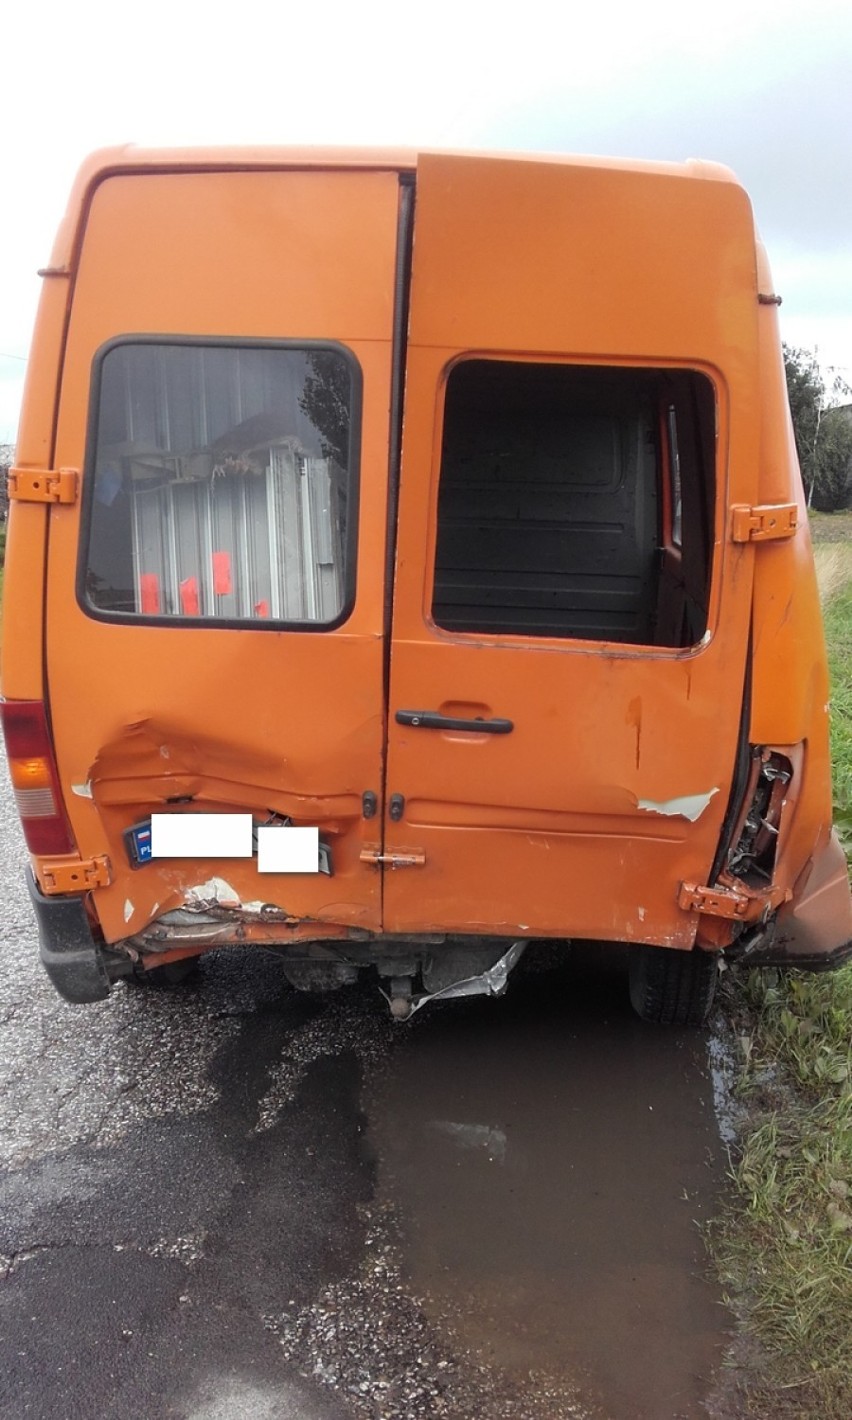 Wypadek w gminie Osięciny [zdjęcia]